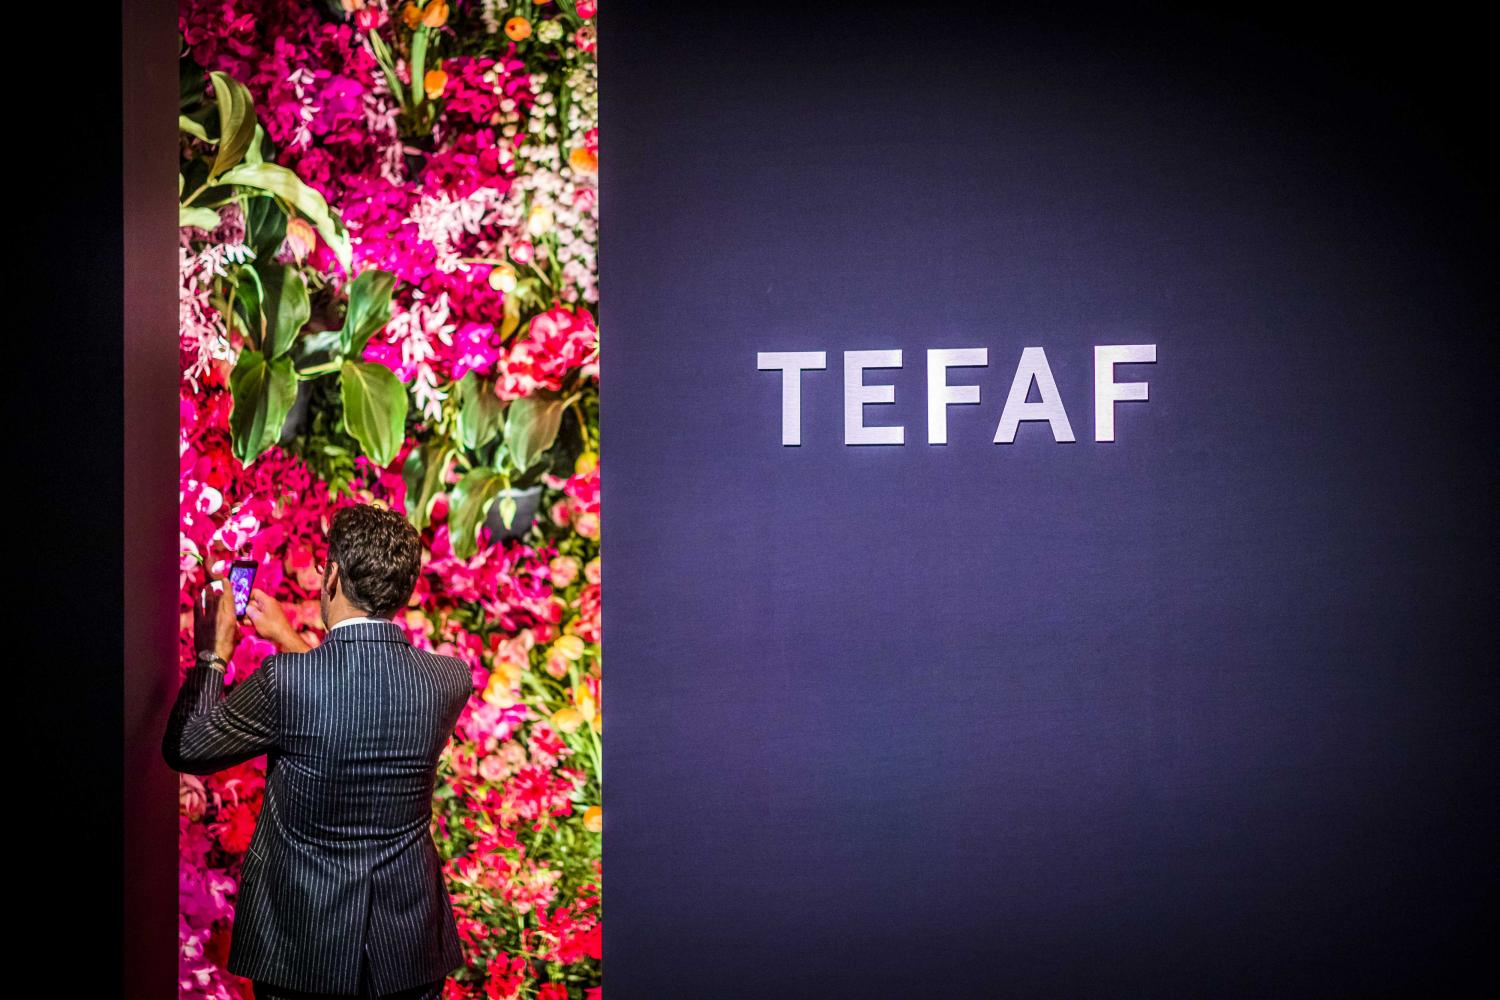 Ein Besucher der Tefaf-Kunstmesse macht mit seinem Handy Bilder von dem Eingang zur Tefaf-Kunstmesse in Maastricht